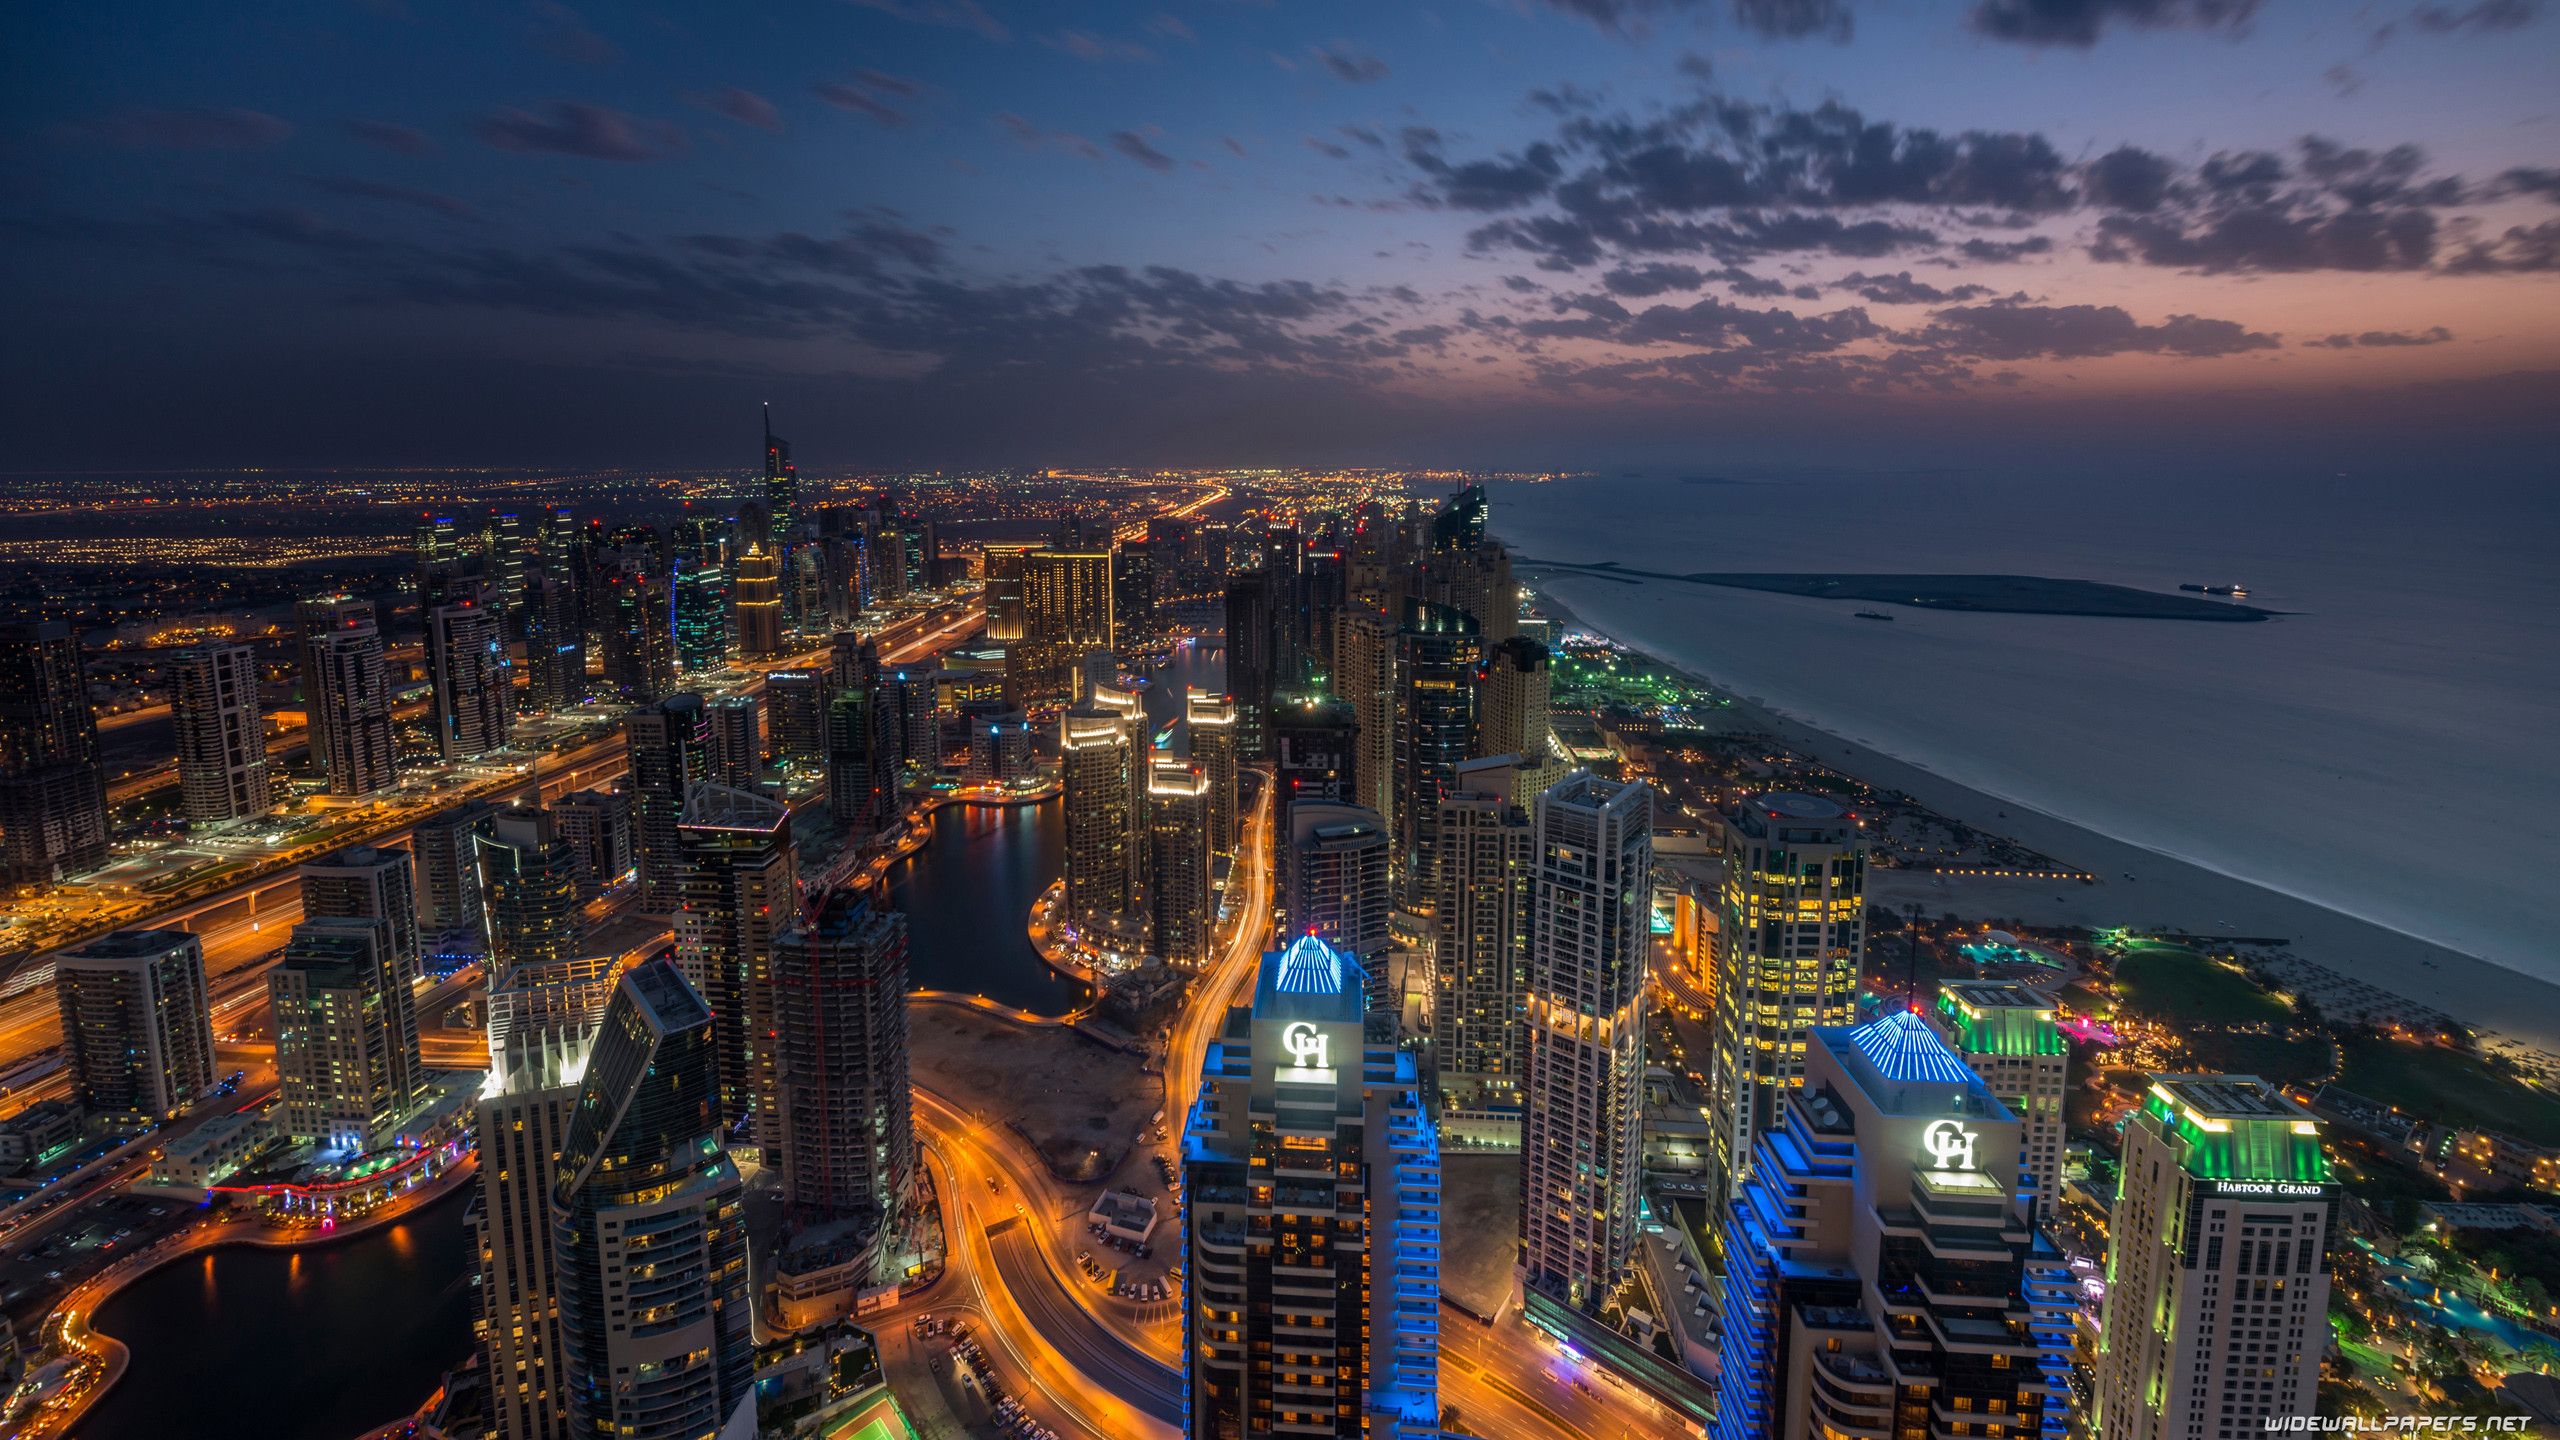 عکس استوک شهر دبی با جاذبه های گردشگری جذاب و متنوع 